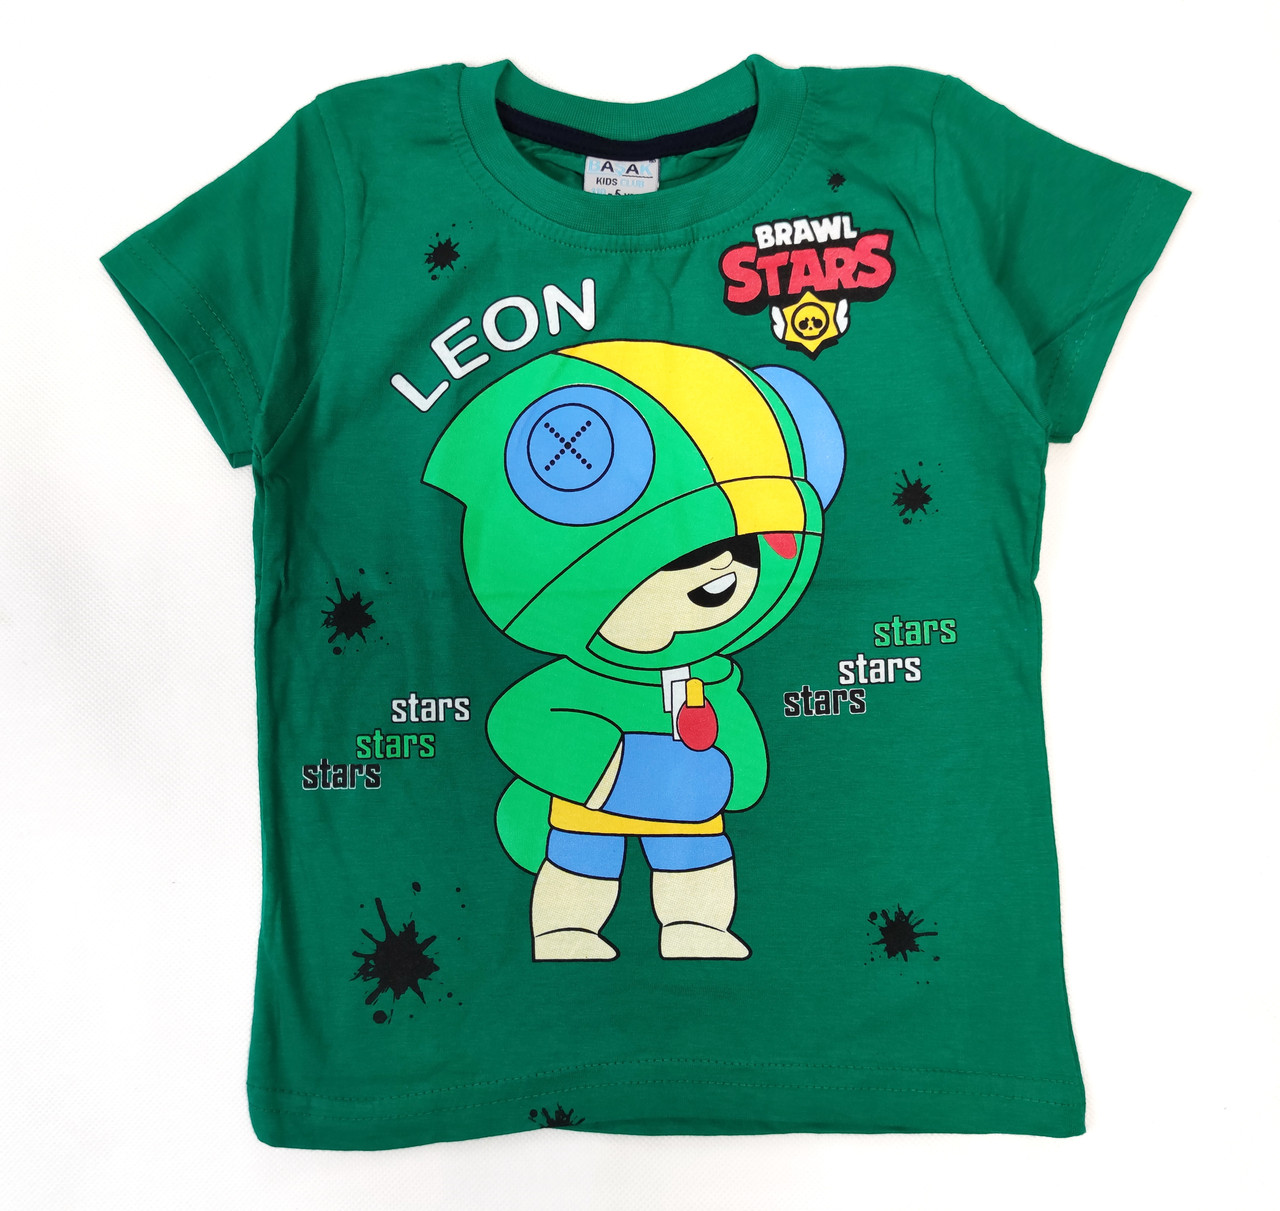 

Детская футболка для мальчика бравл старс brawl stars Леон светло зелёная 5-6 лет